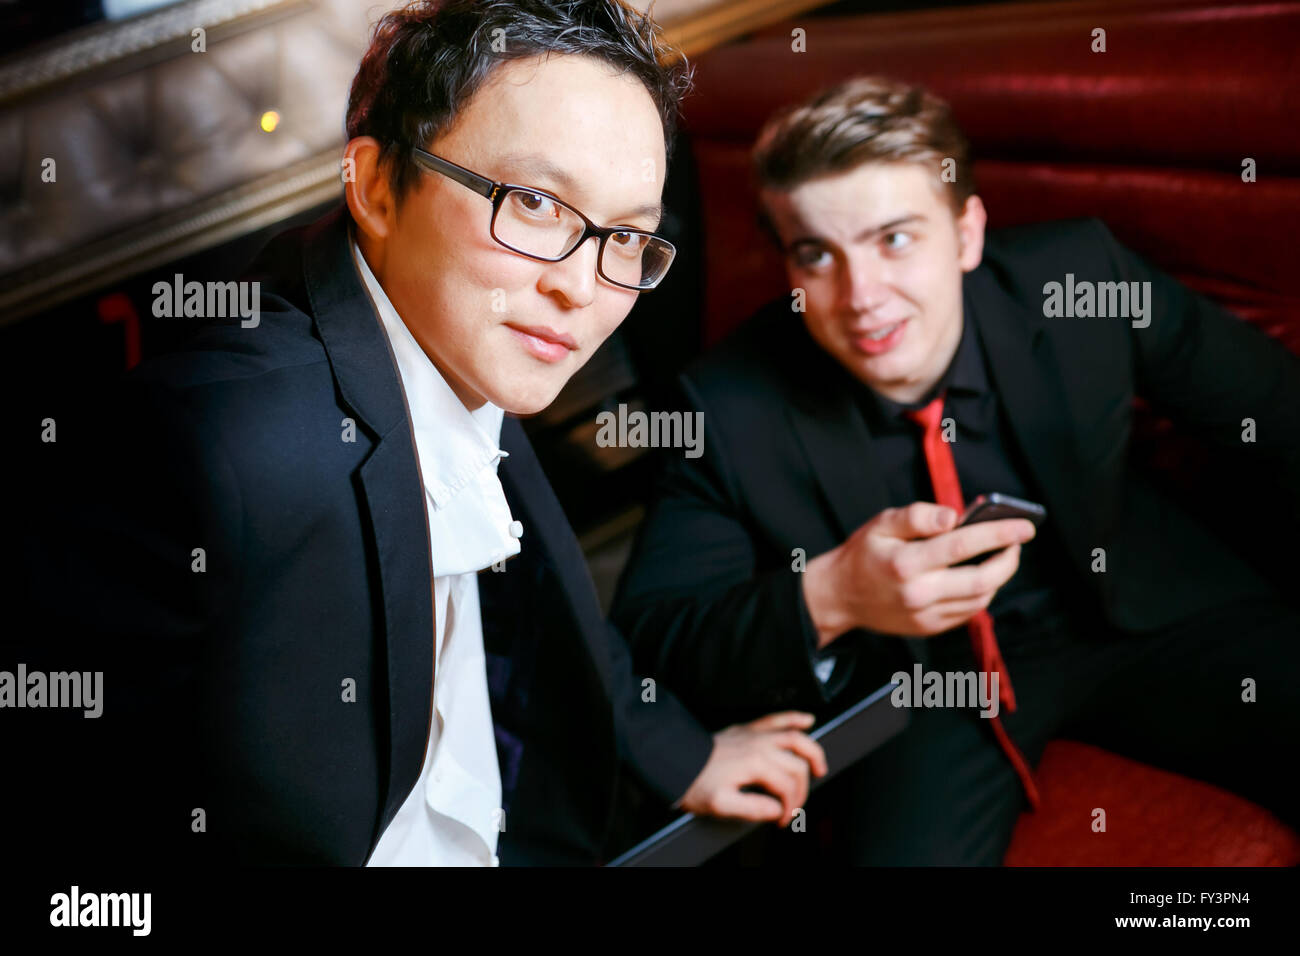 Zwei stilvolle Mann reden, gekleidet in Anzug und Krawatte, informelle Atmosphäre in bar, Männer Freundschaft. Stockfoto